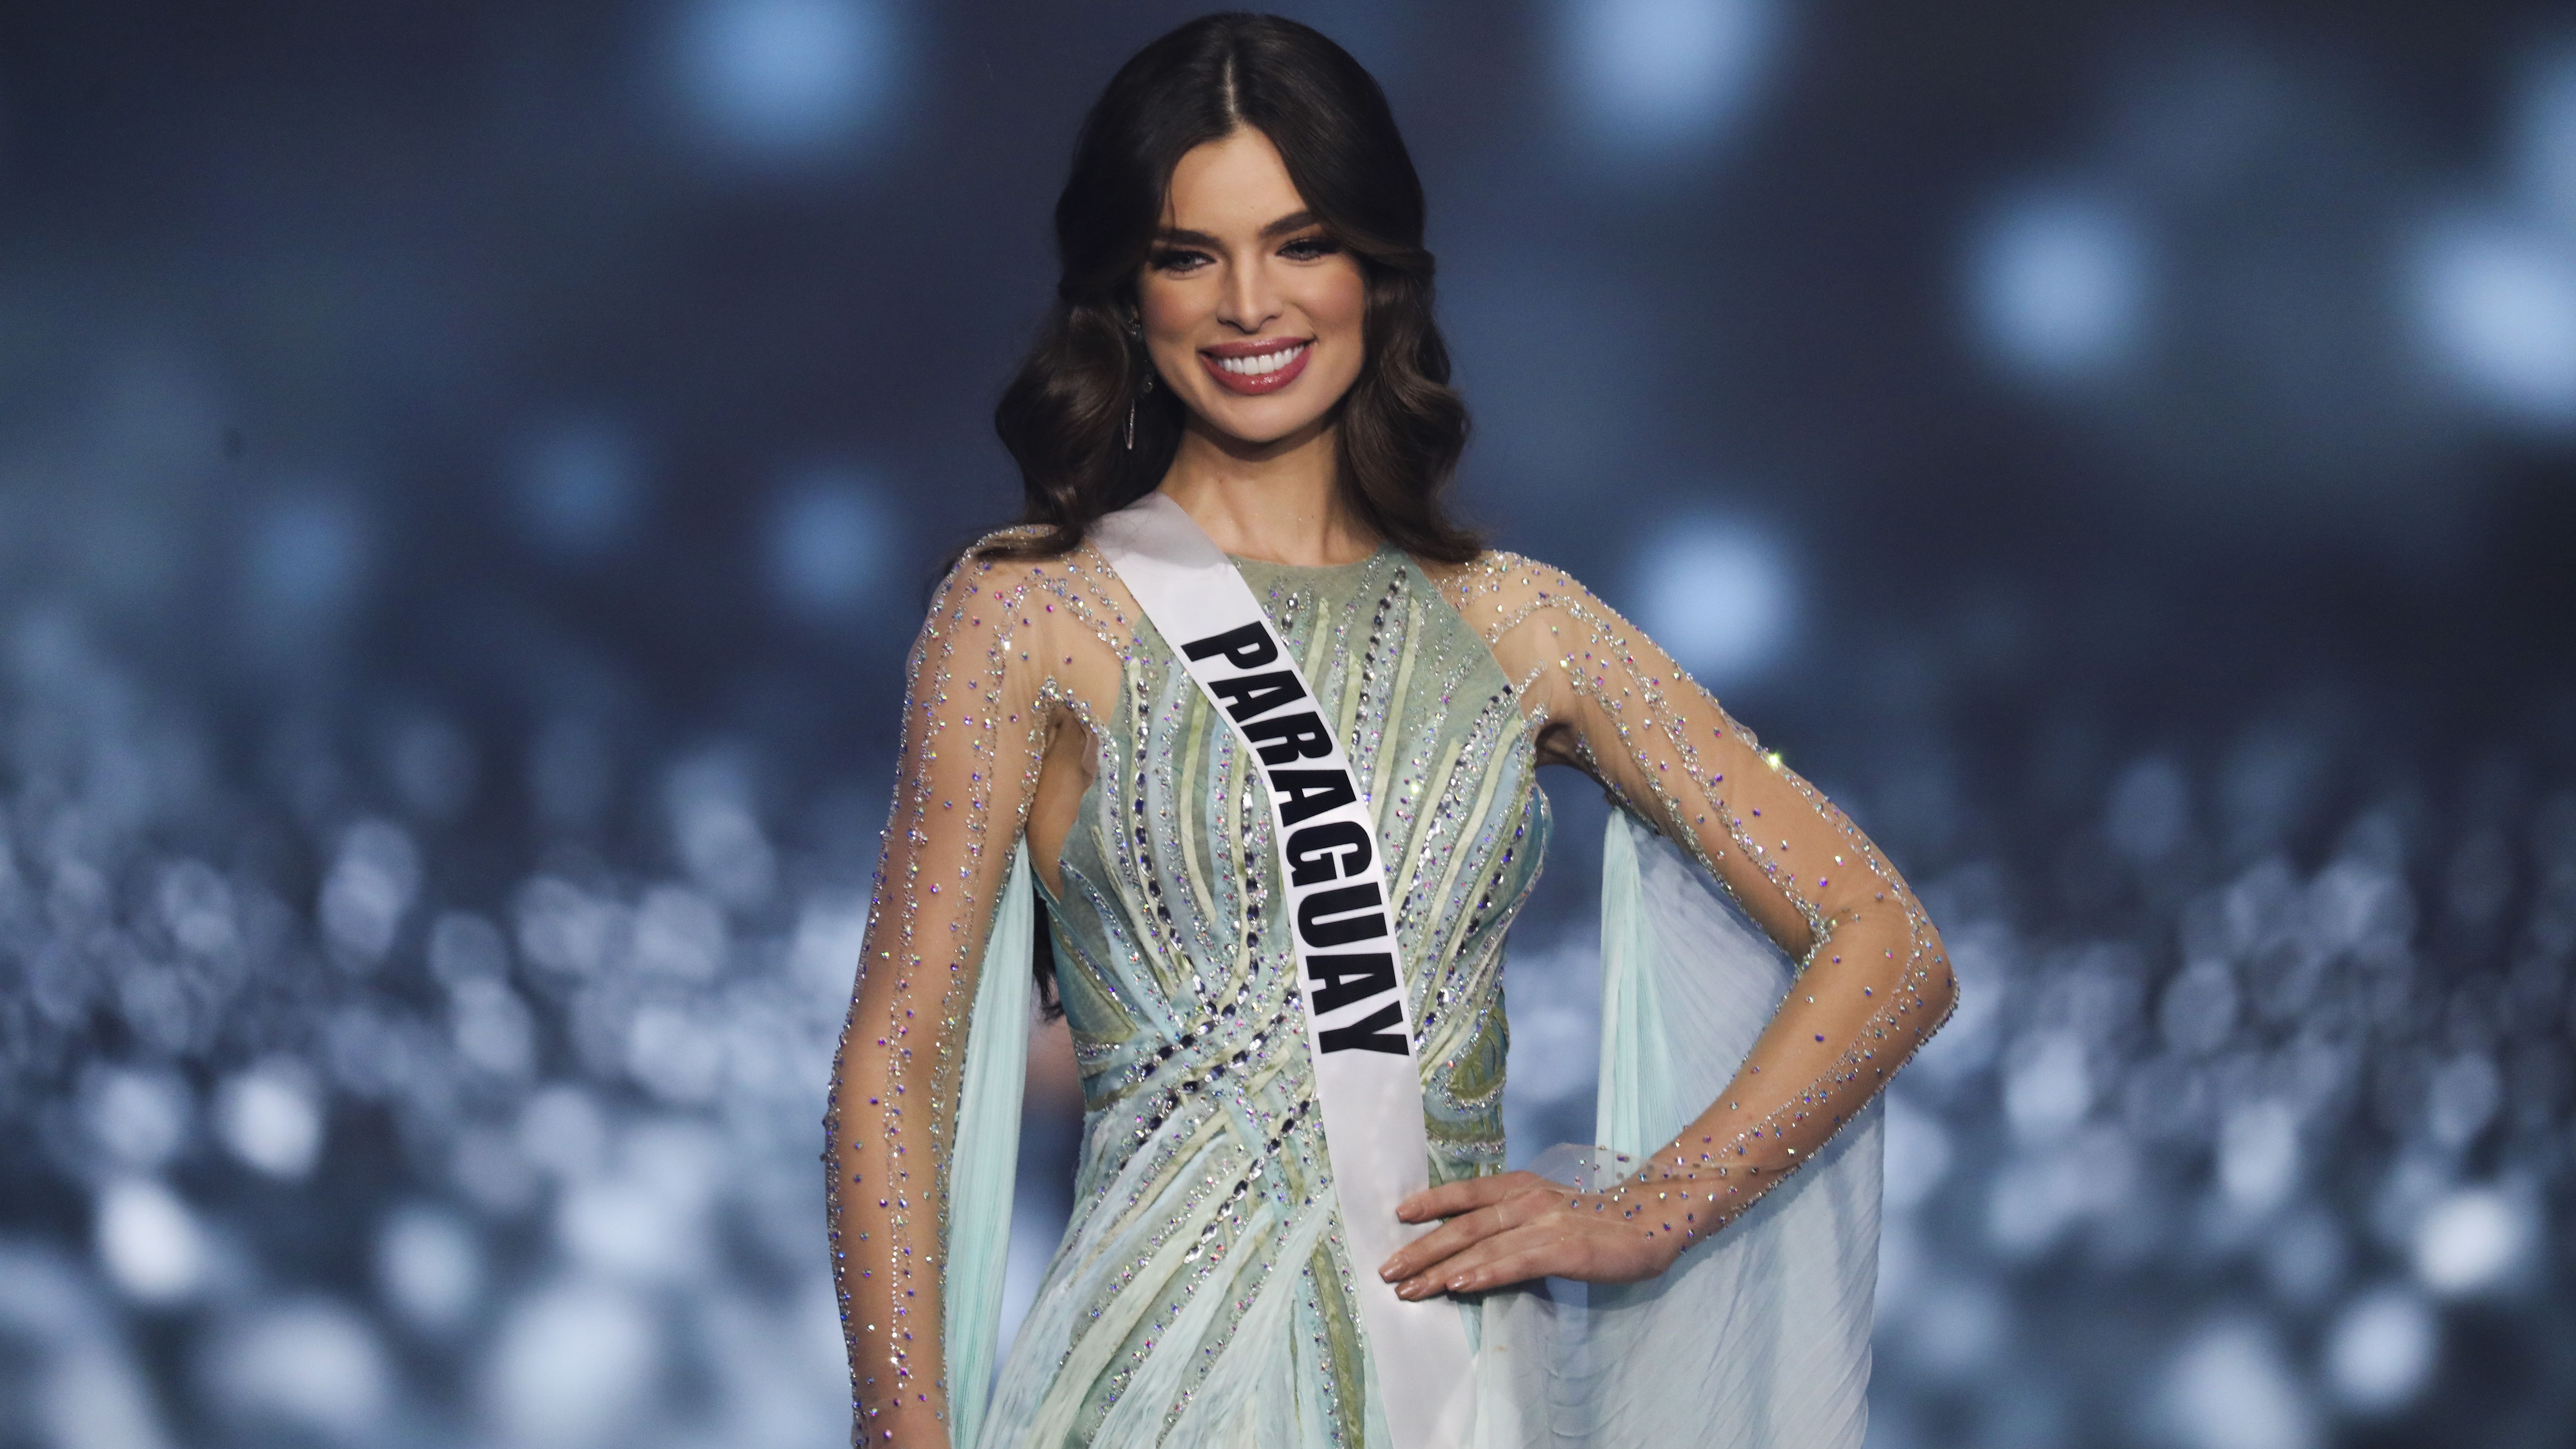 Nadia Ferreira asumirá el puesto de Miss Universo